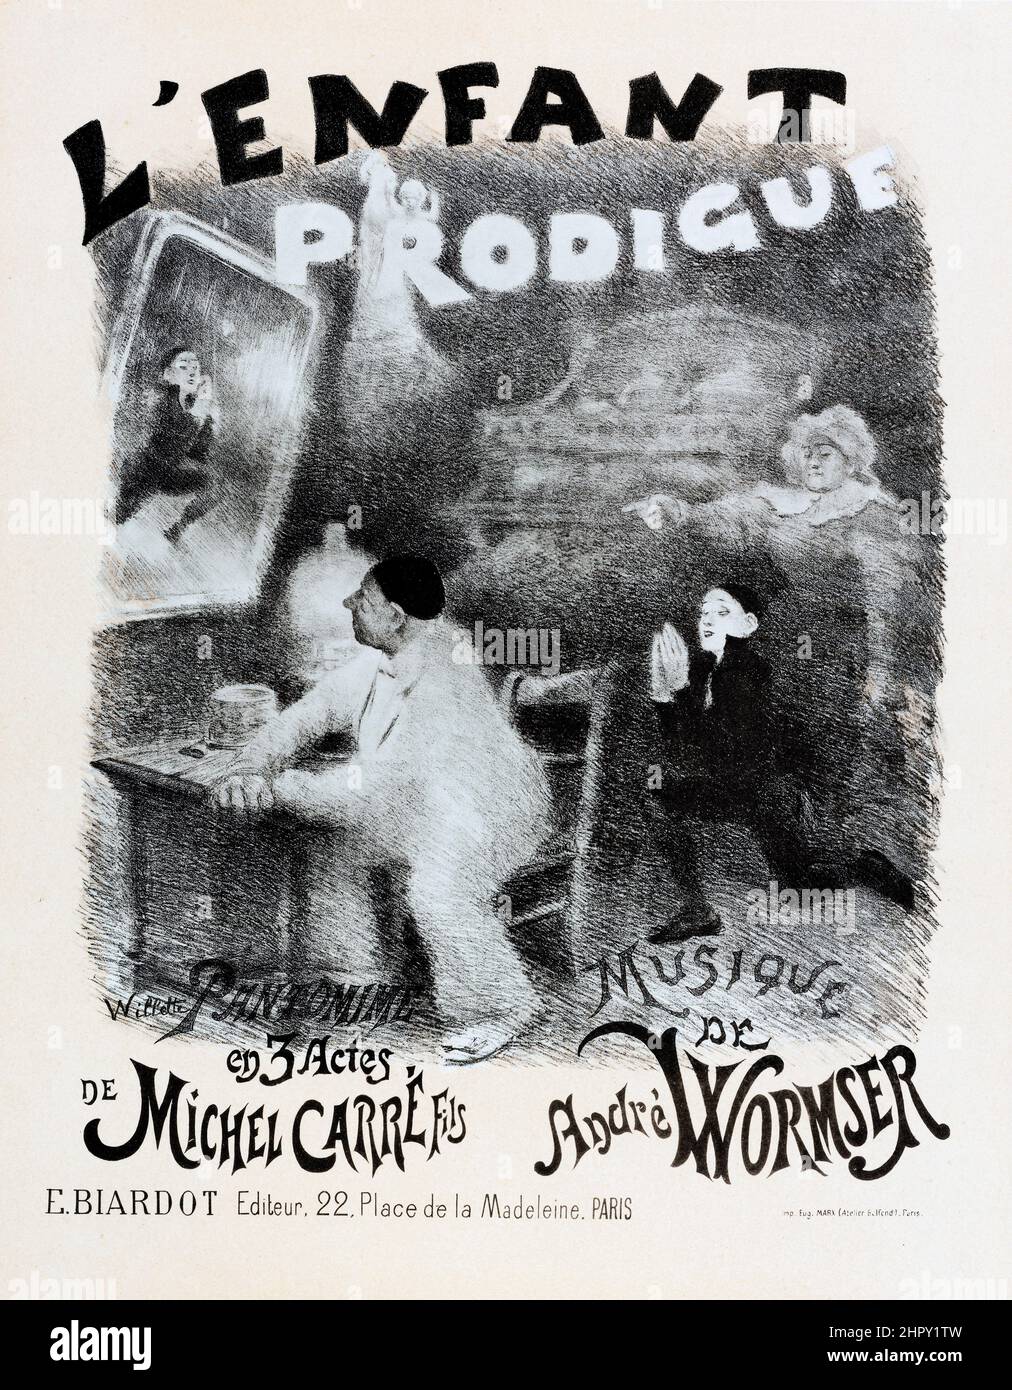 Les Maitres de l'Affiche - plate 15 - L'Enfant Prodigue. Circa: 1896 - Artist: Adolphe Willette, drawing. Stock Photo